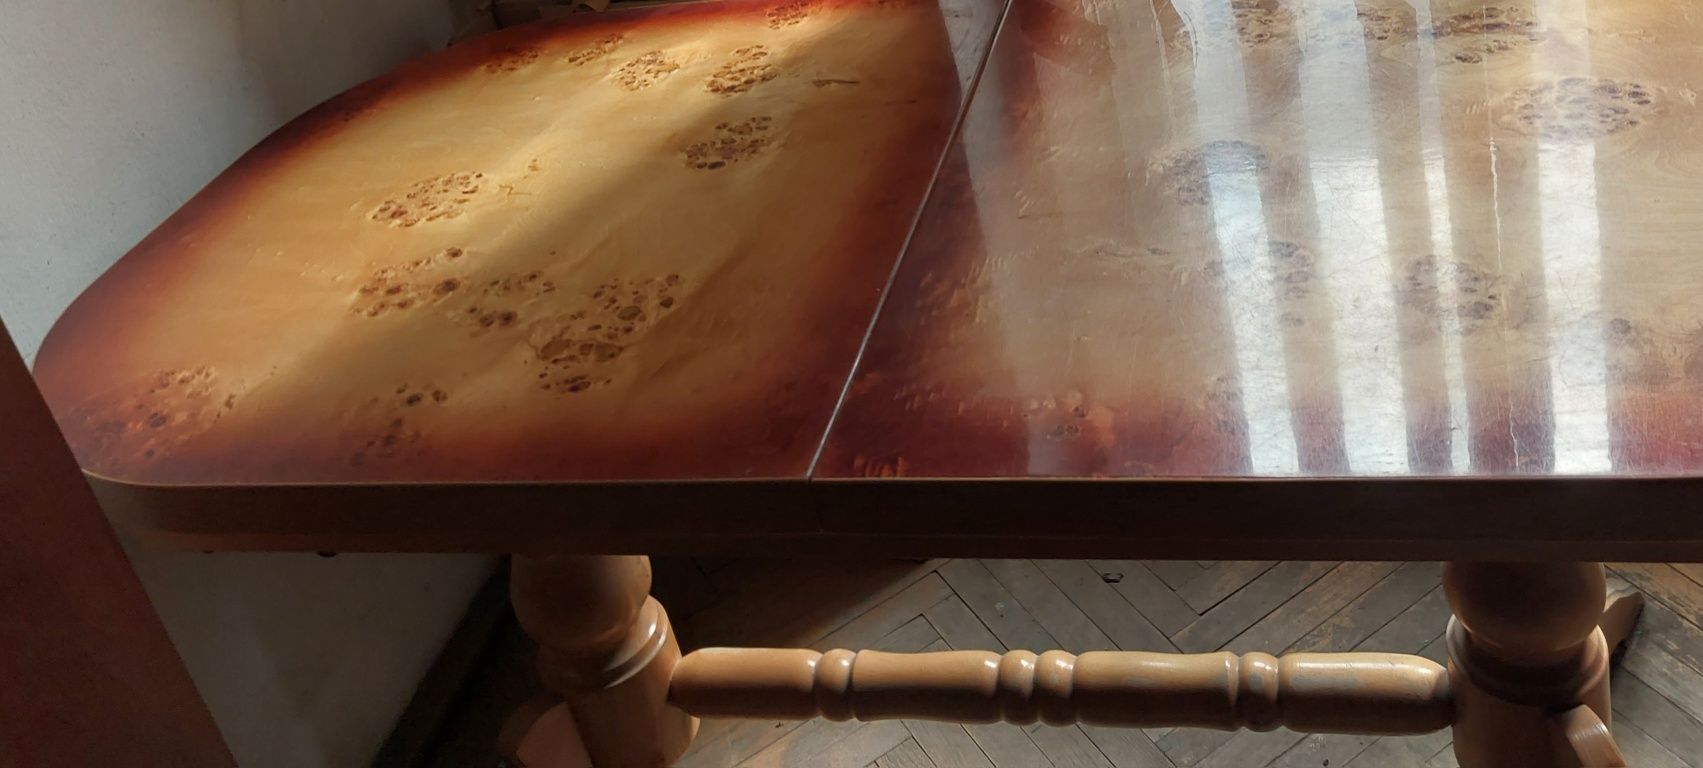 Ławo-stół podnosi się i obniża kręcąc korbką umieszczoną pod blatem.